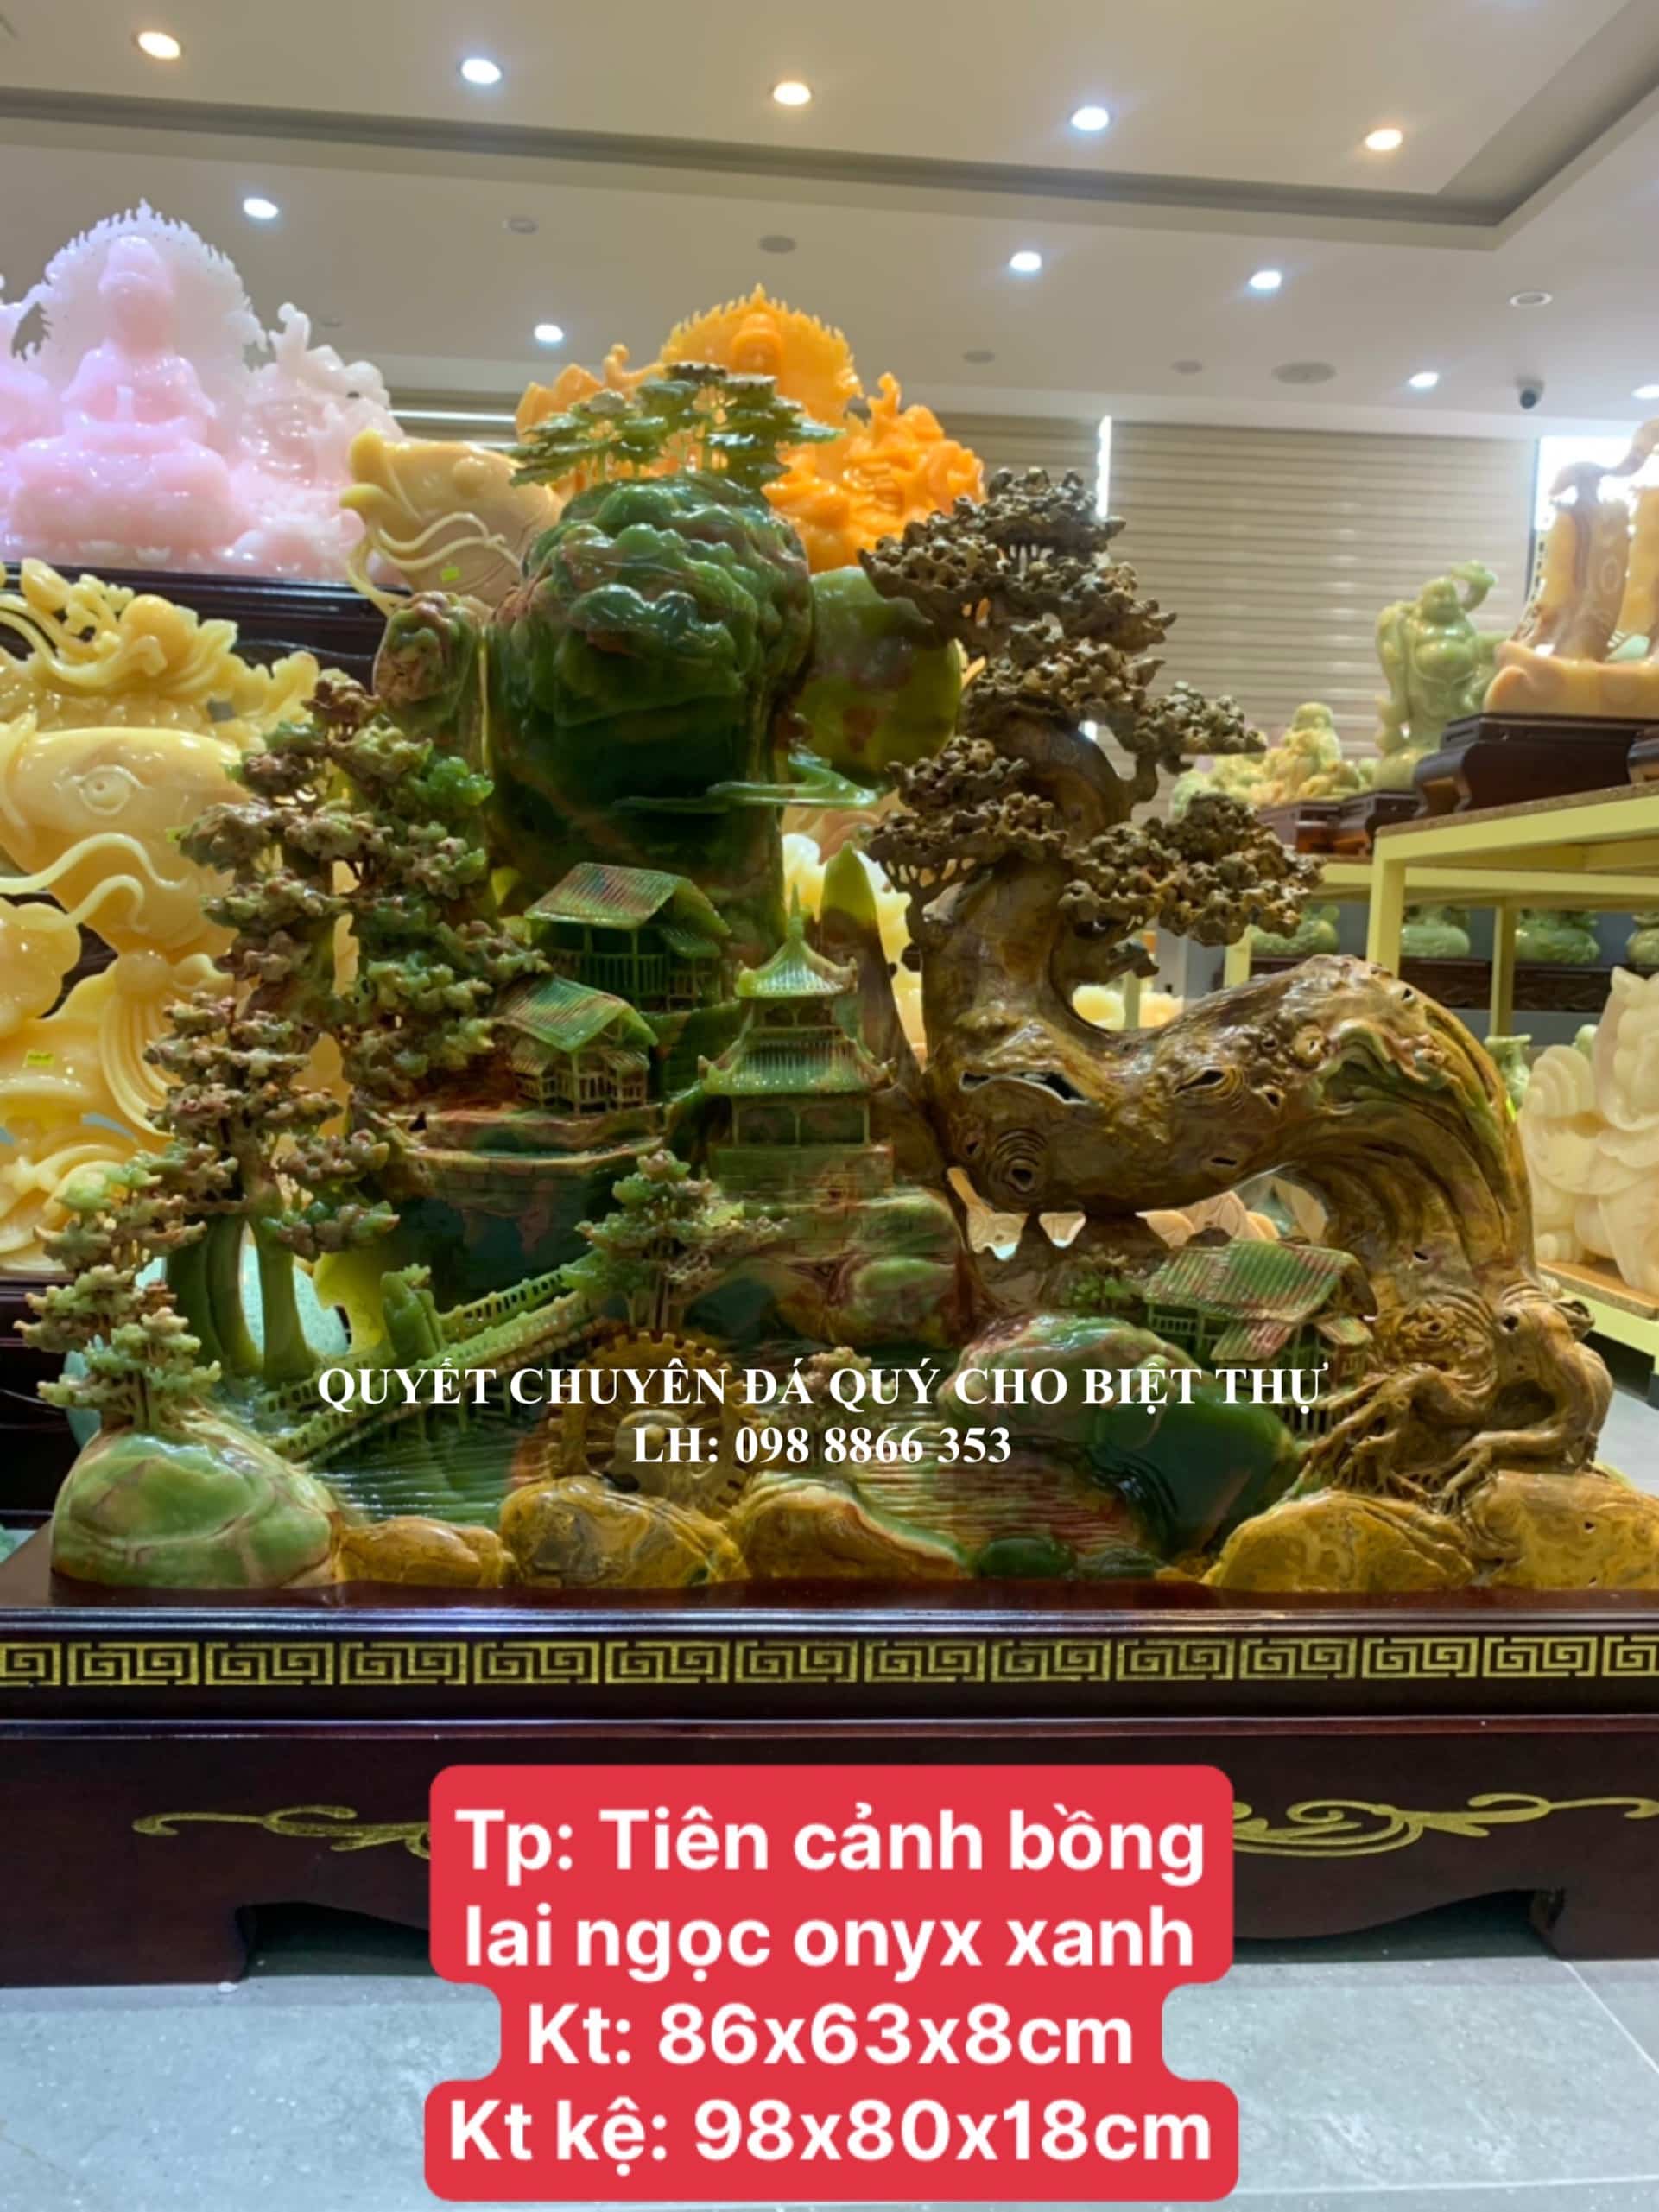 Tác Phẩm Bồng Lai Tiên Cảnh Ngọc Onyx Xanh Được Chế Tác Tỷ Mỉ, Công Phu